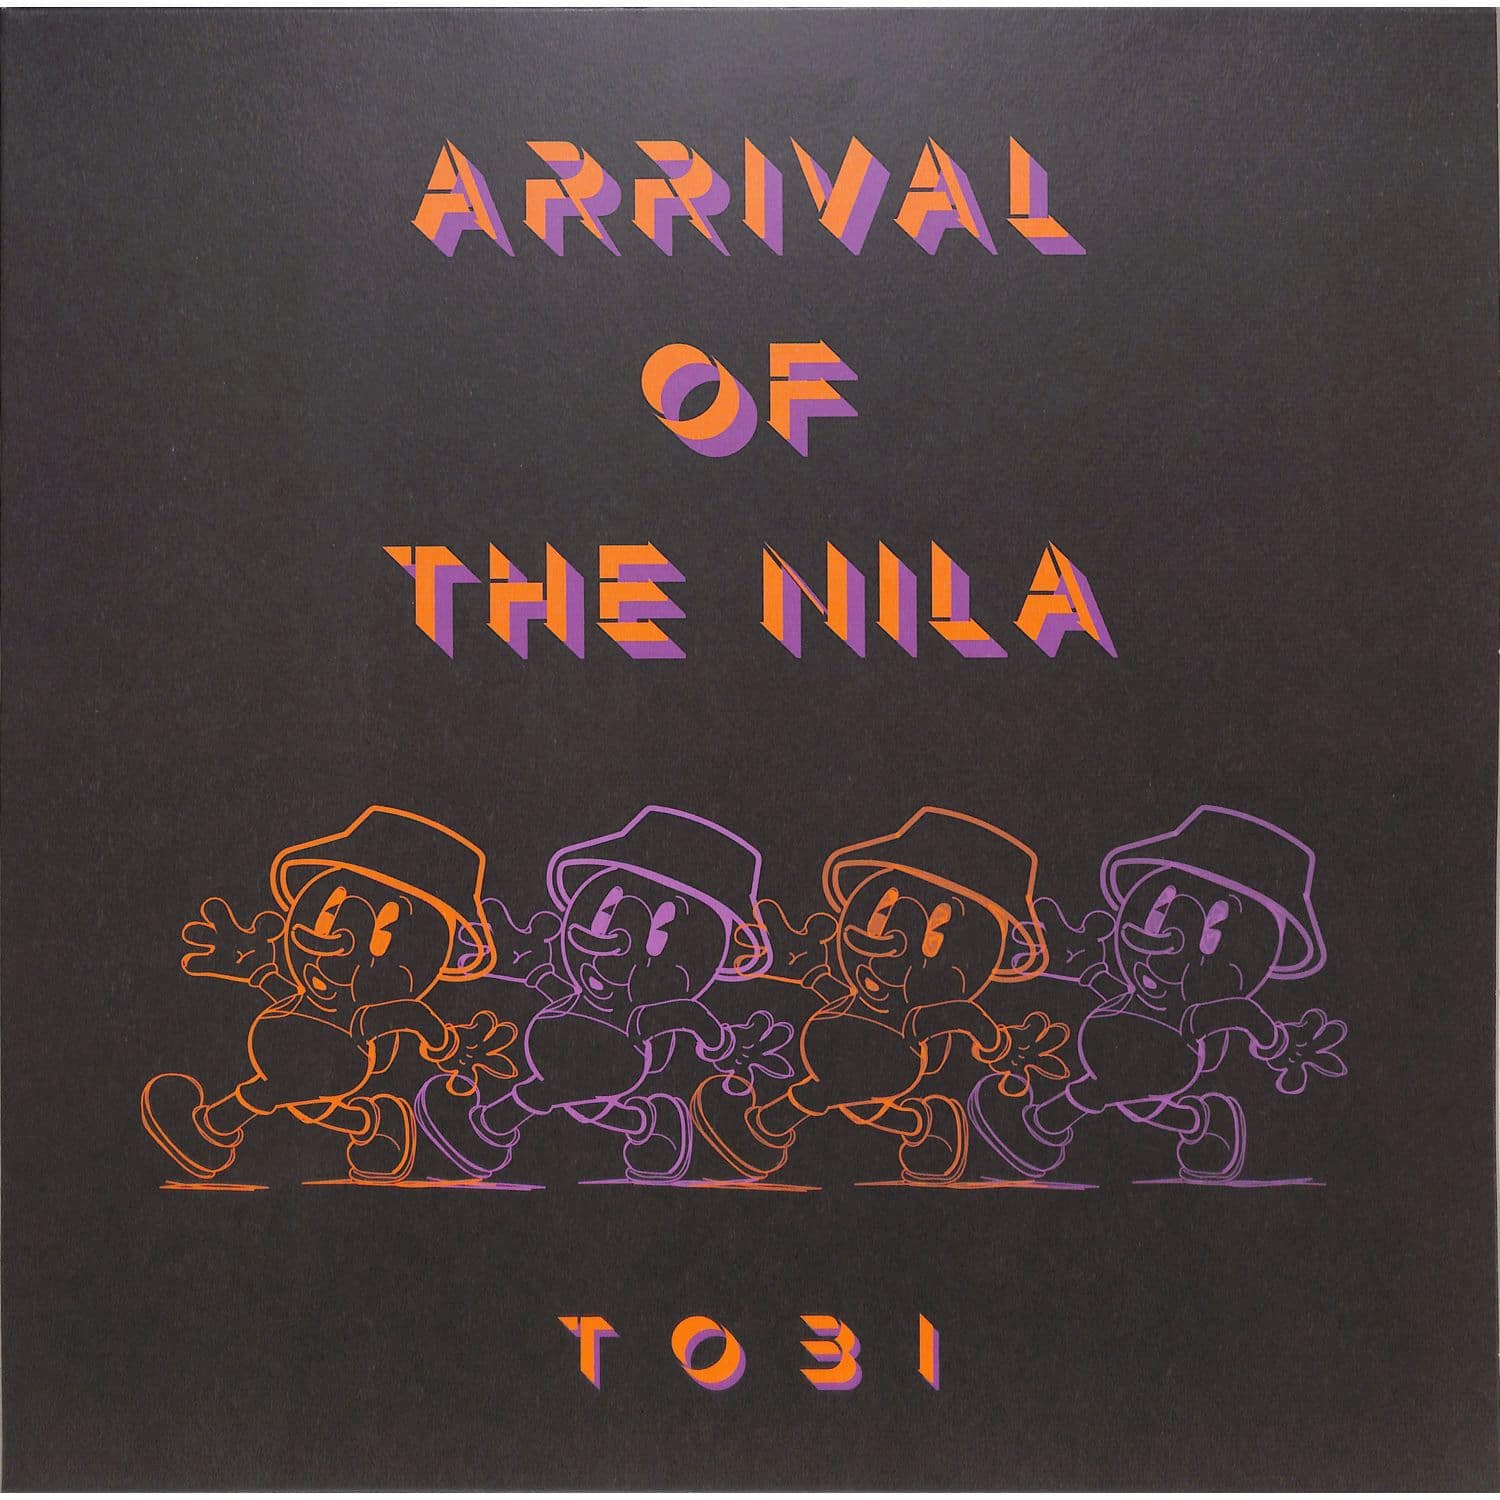 Tobi - ARRIVAL OF THE NILA